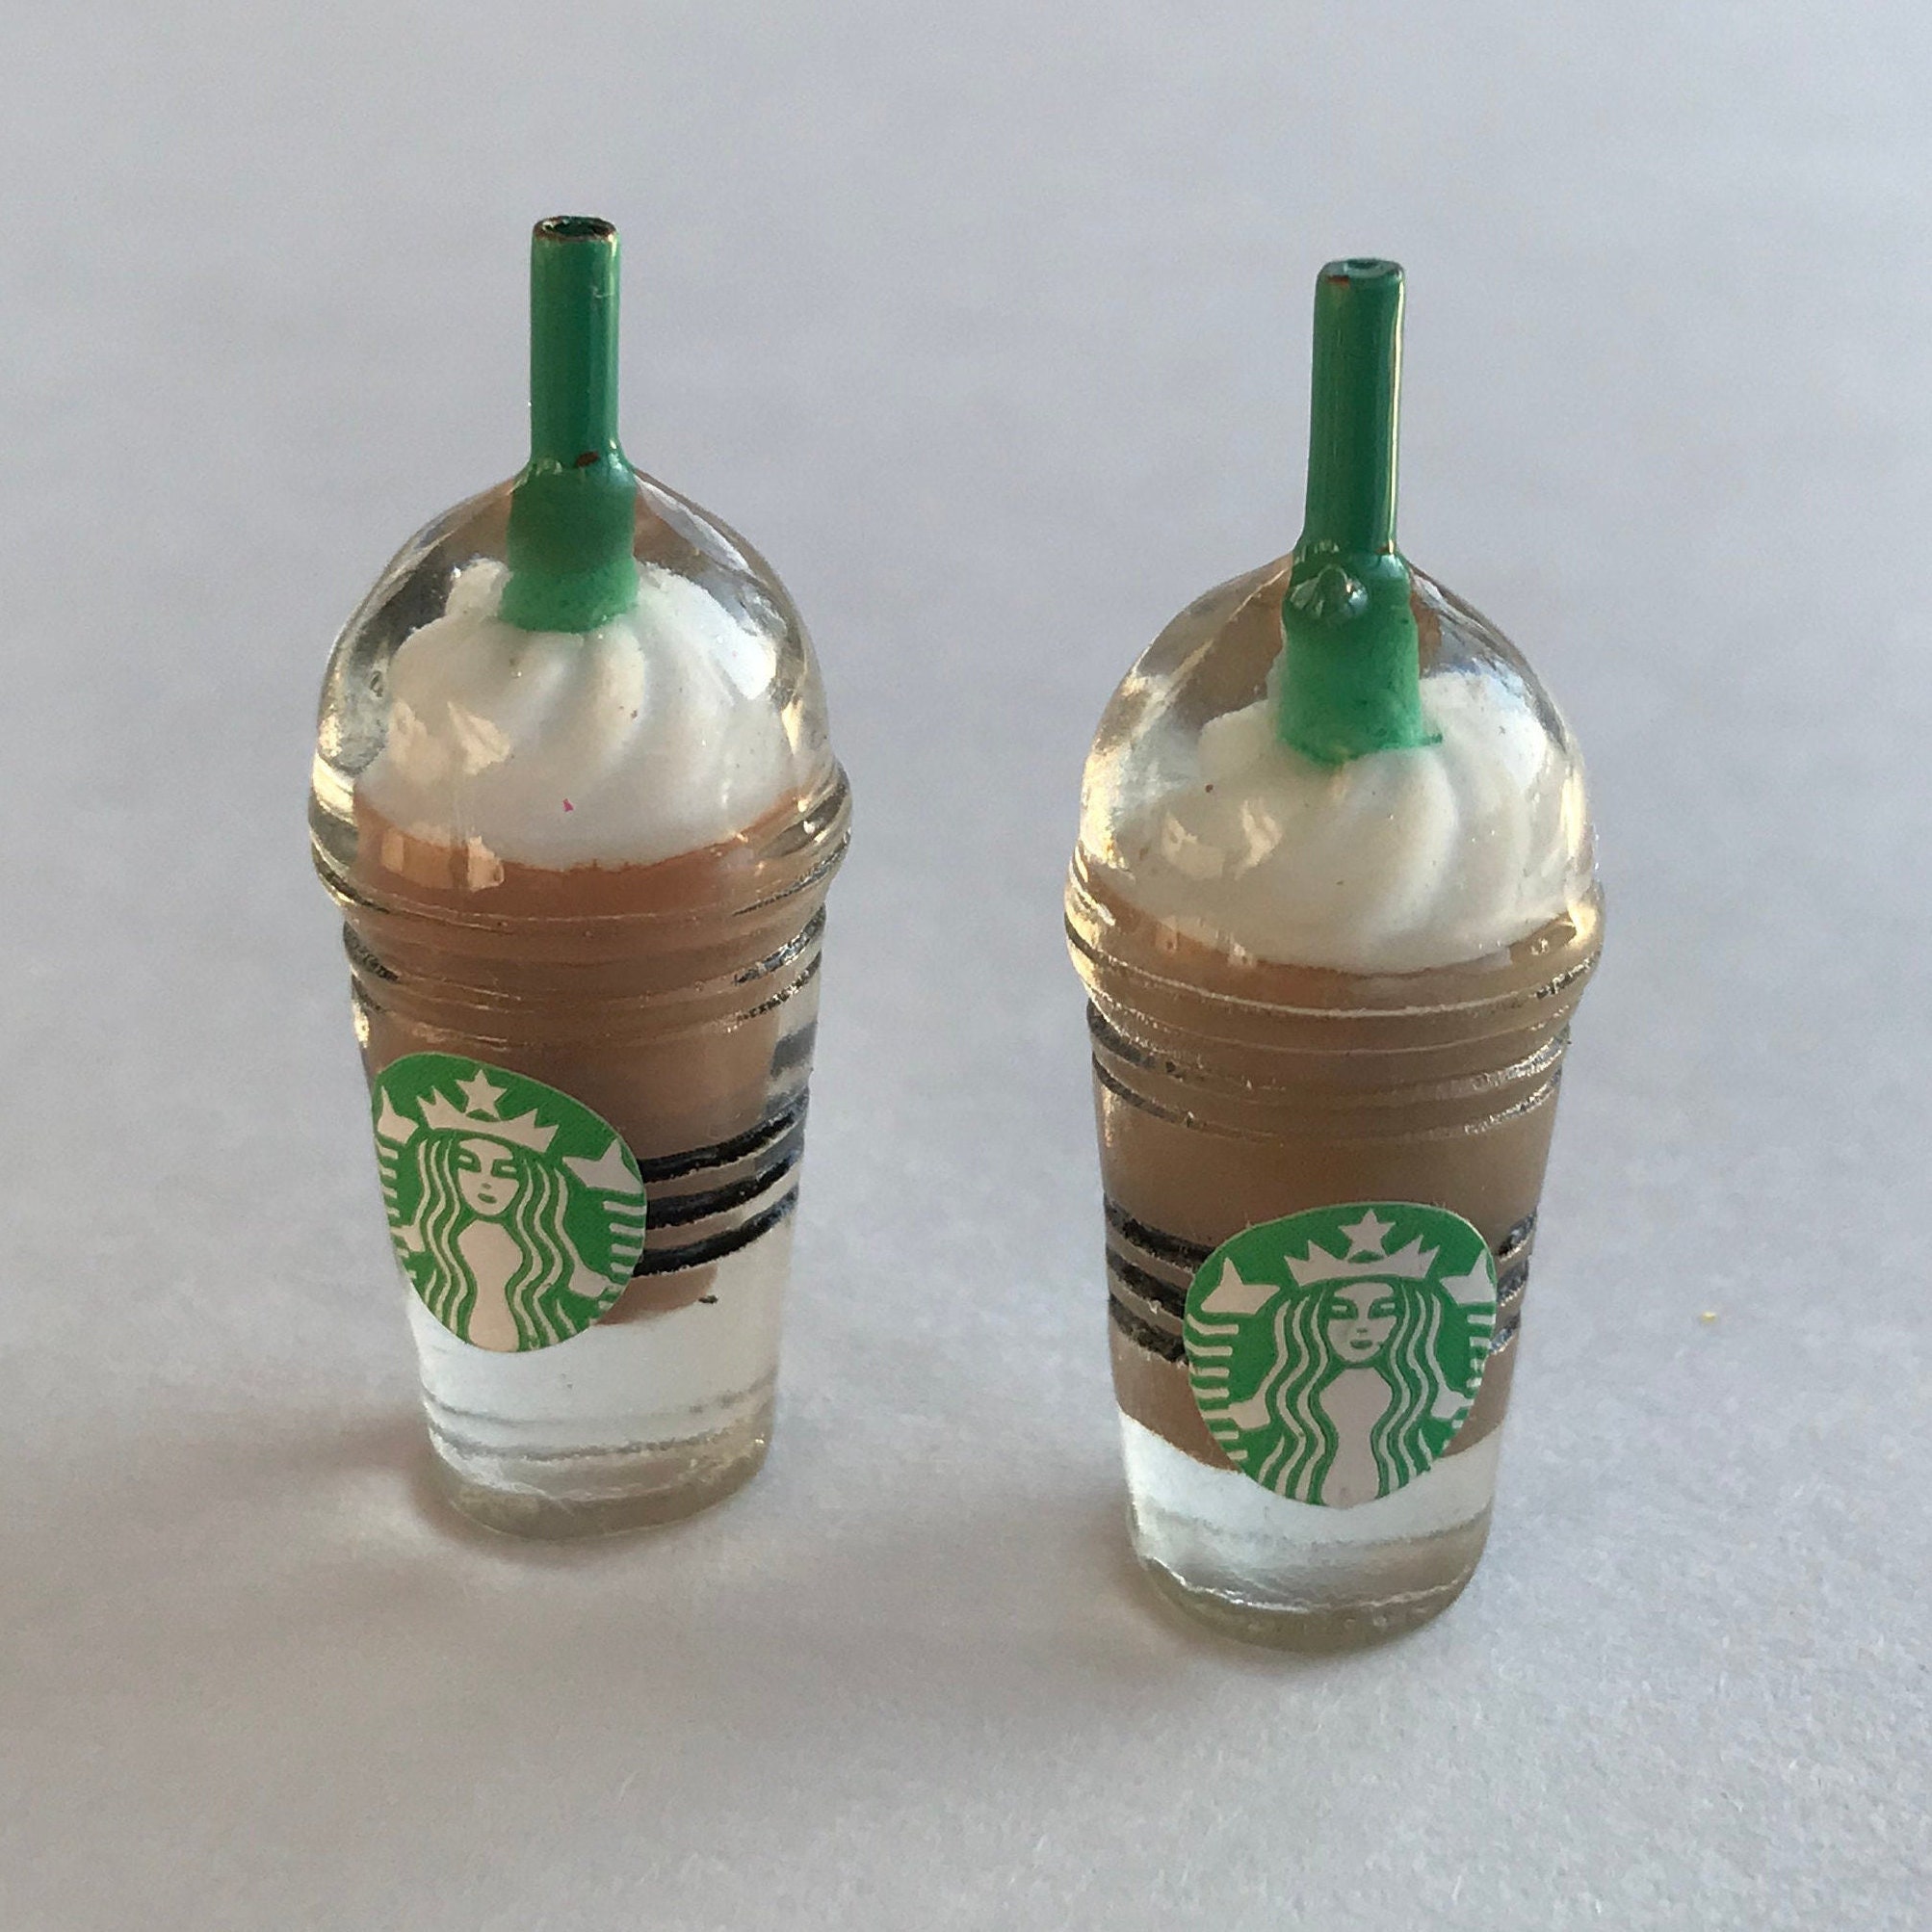 The Adorable Mini (10 ounce) Frappuccino. 